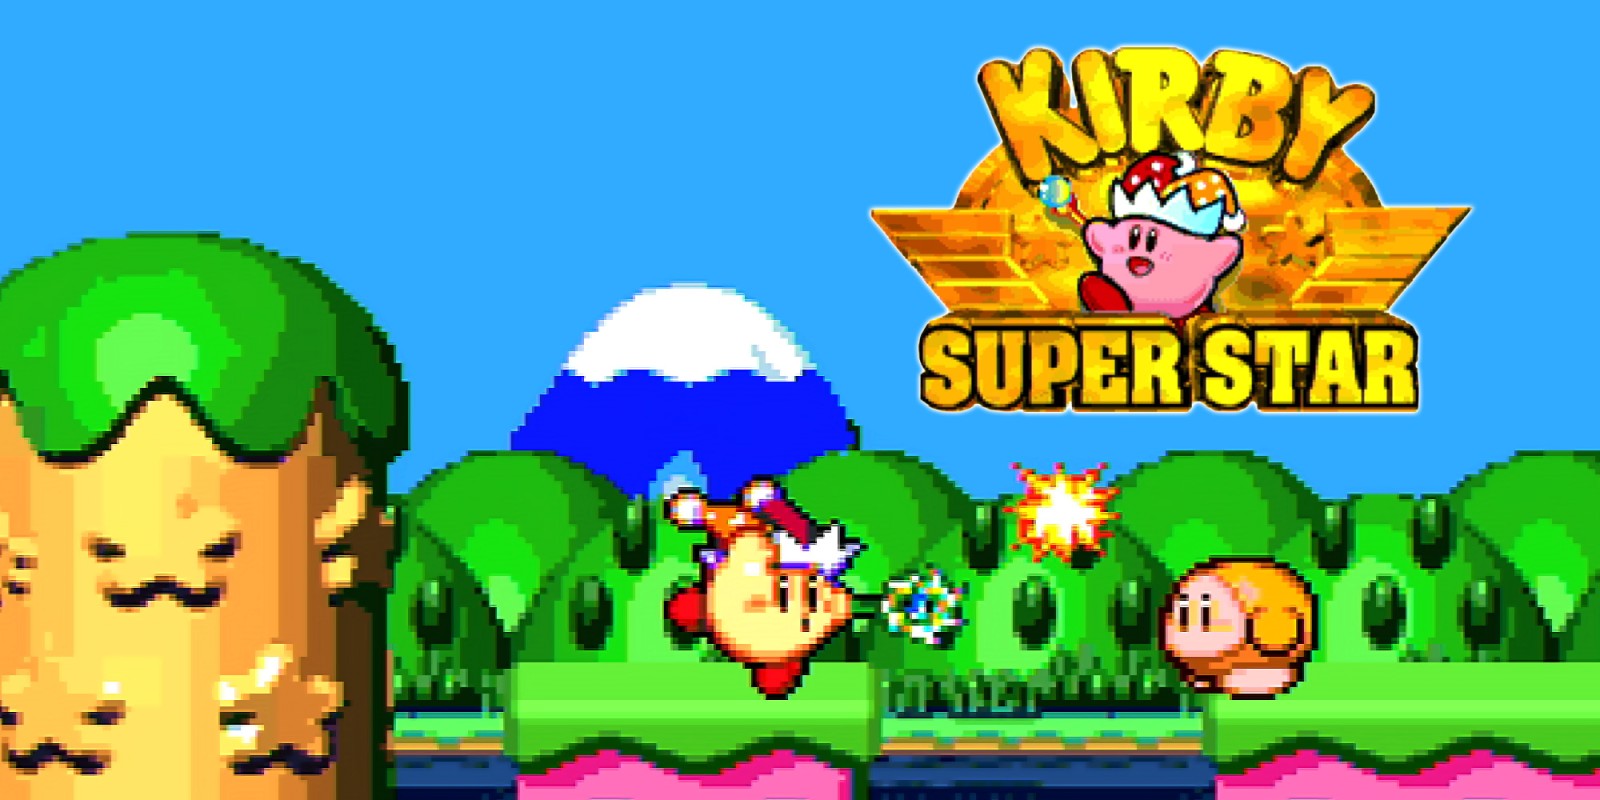 TOP 5 - Los MEJORES juegos de Kirby - NPe